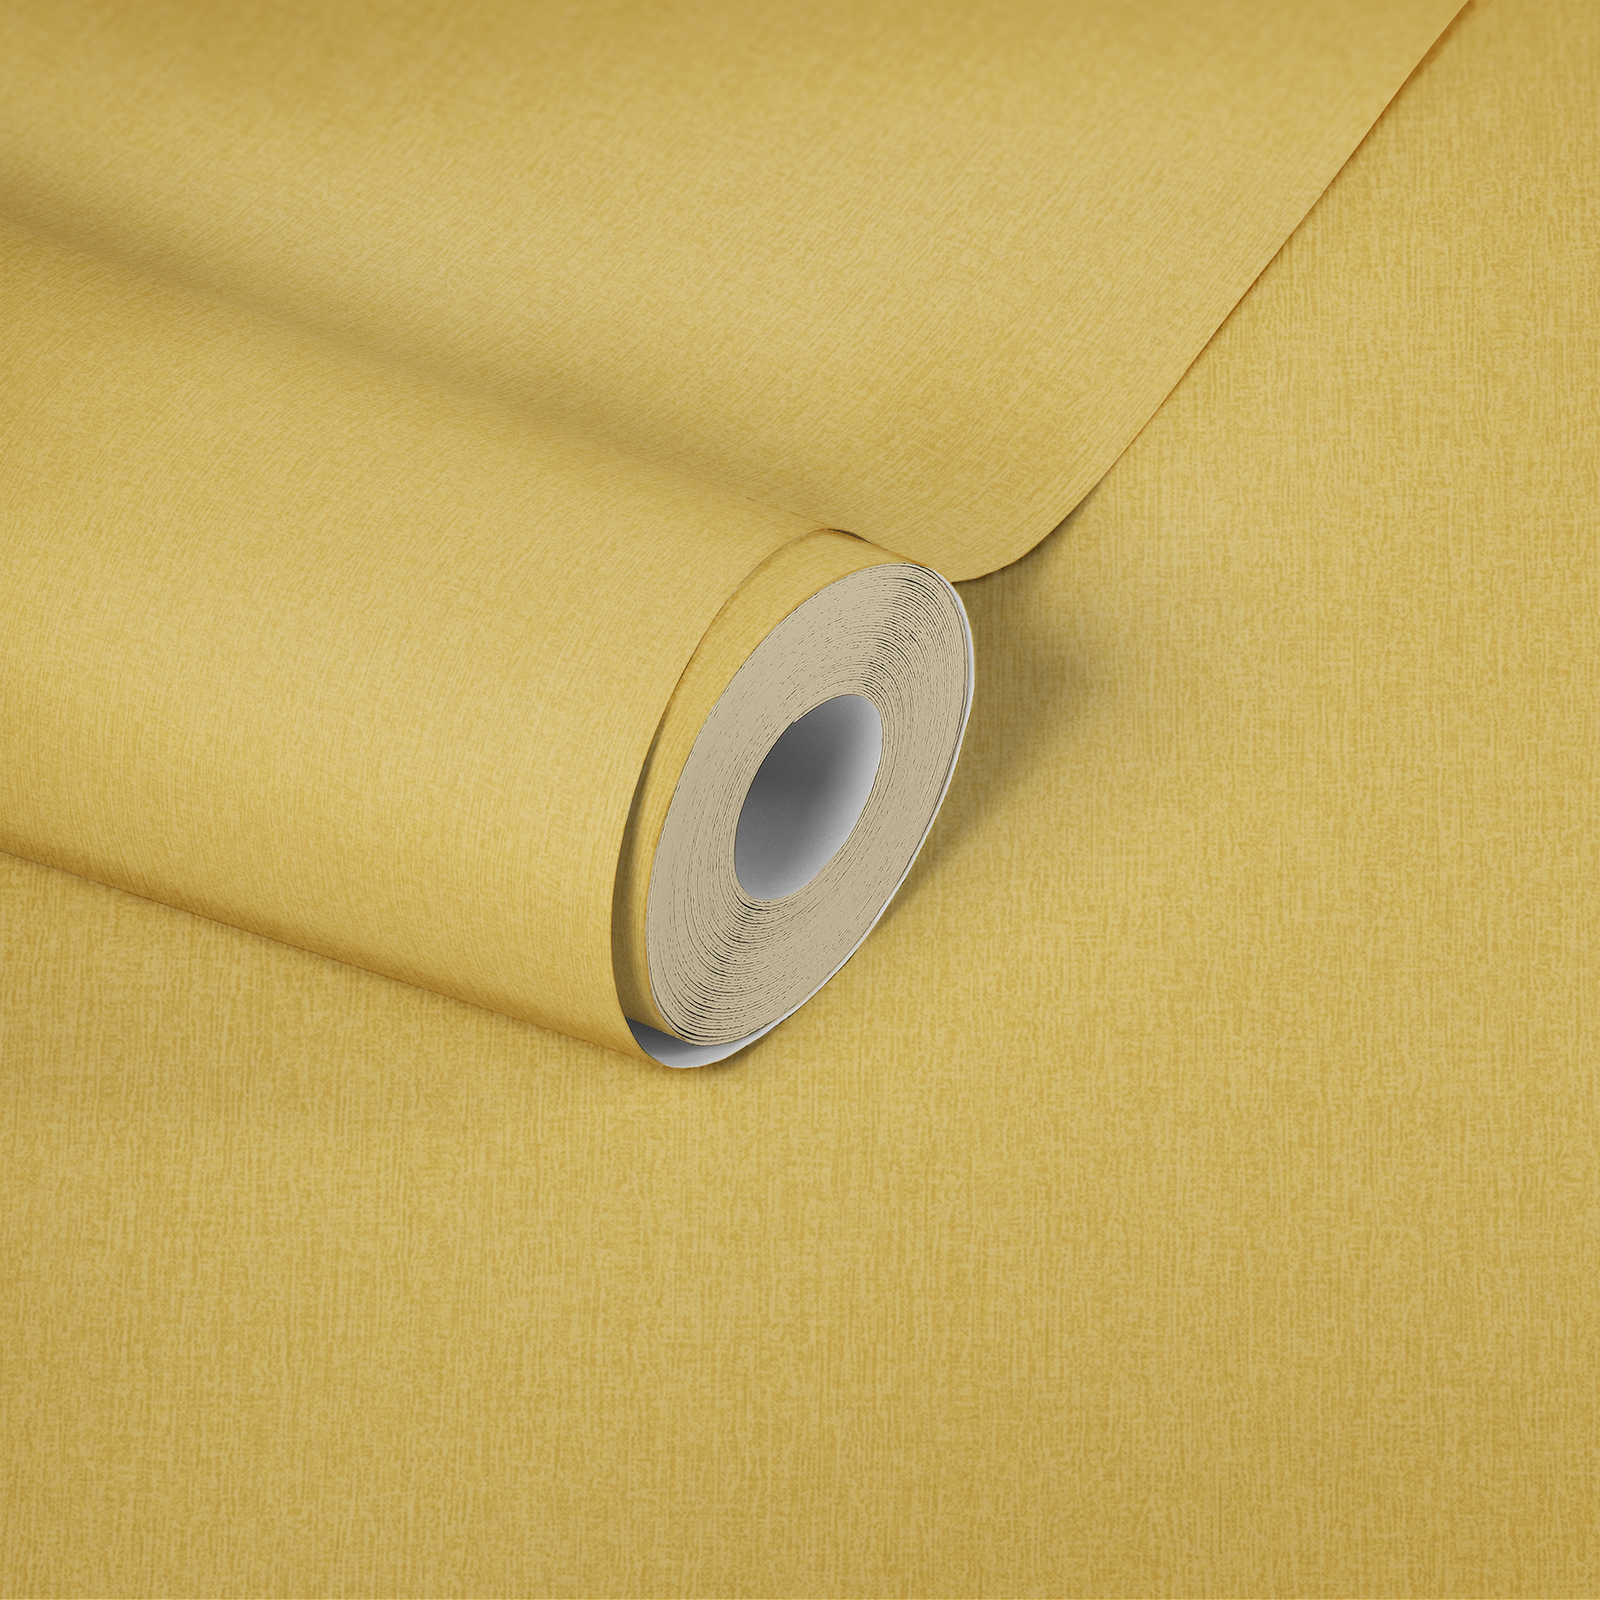             Papier peint uni aspect textile, couleur chinée - jaune
        